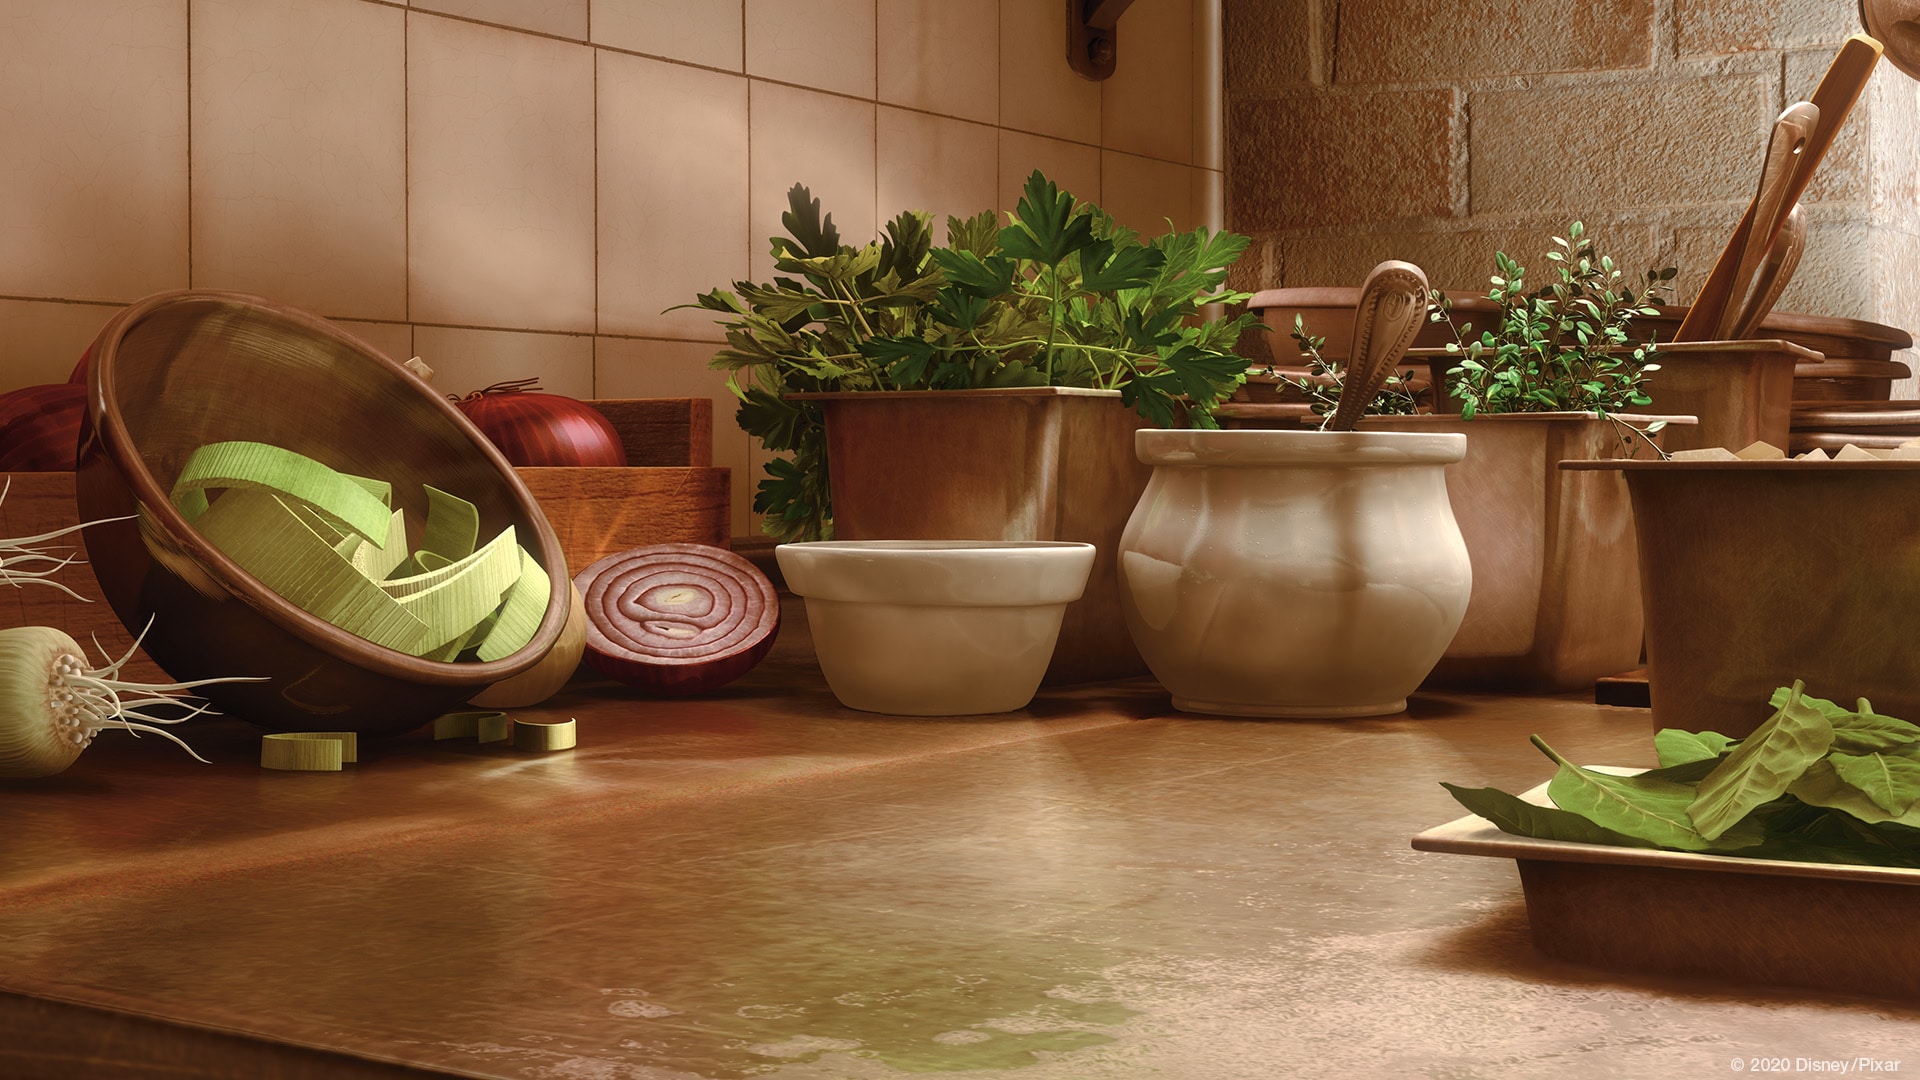 Ratatouille - Kitchen worktop from the Disney Pixar movie Ratatouille